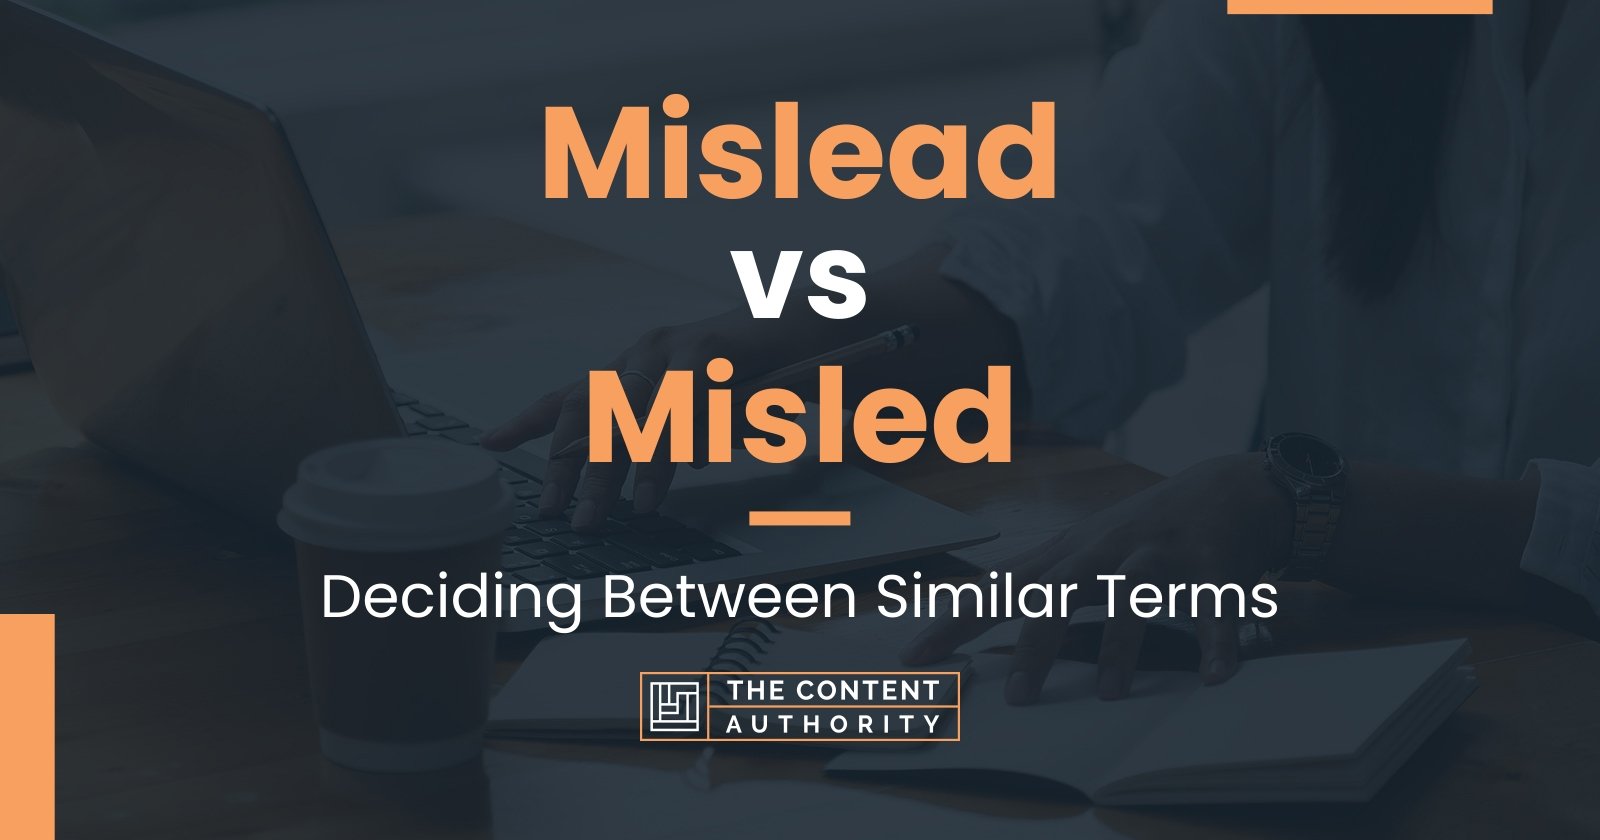 Mislead vs Misled: Deciding Between Similar Terms